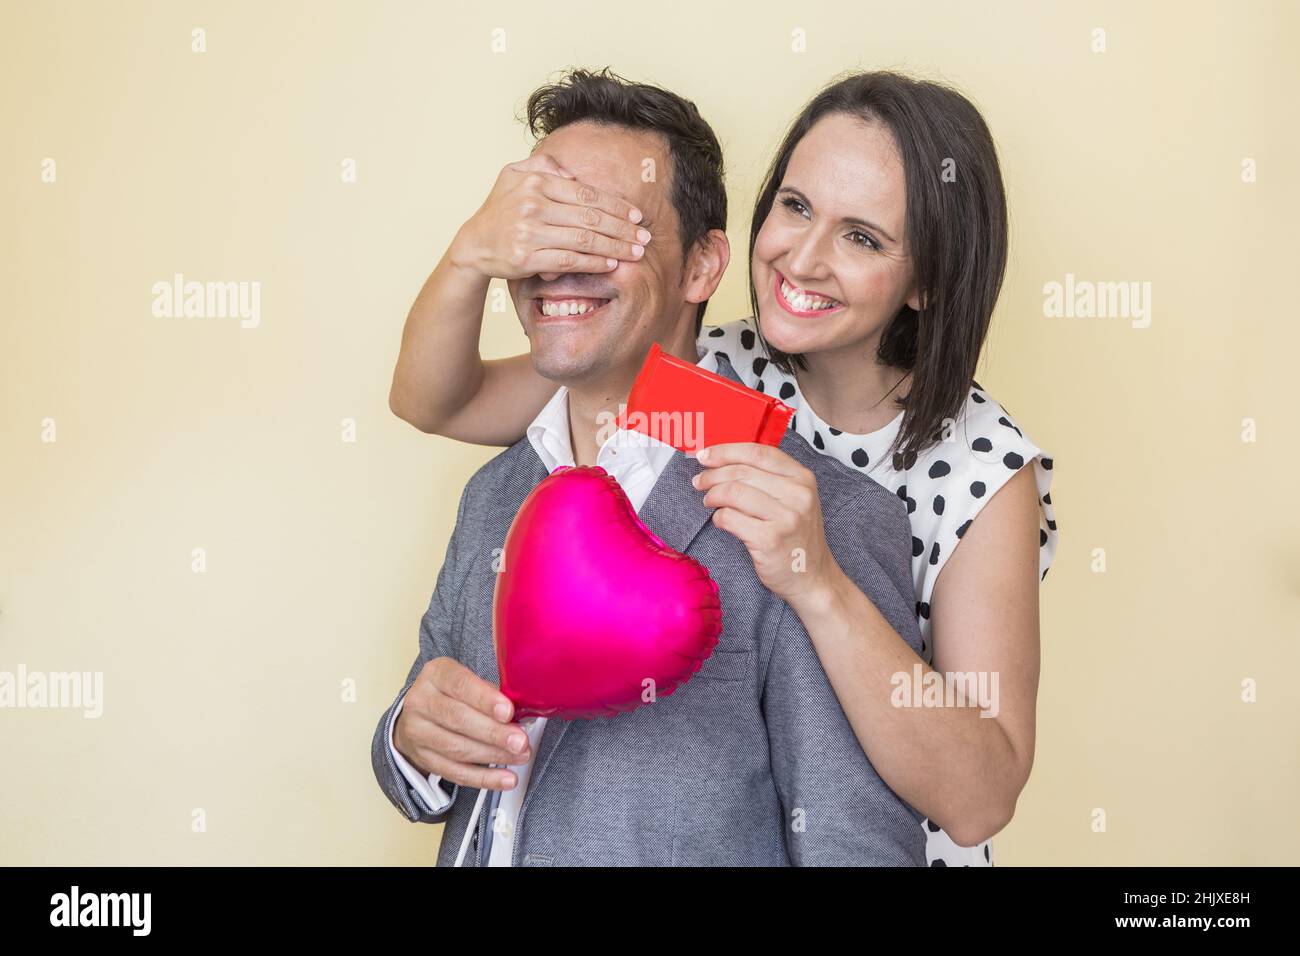 Allegra donna ispanica che copre gli occhi dell'uomo e gli dà presente mentre festeggia San Valentino su sfondo beige Foto Stock